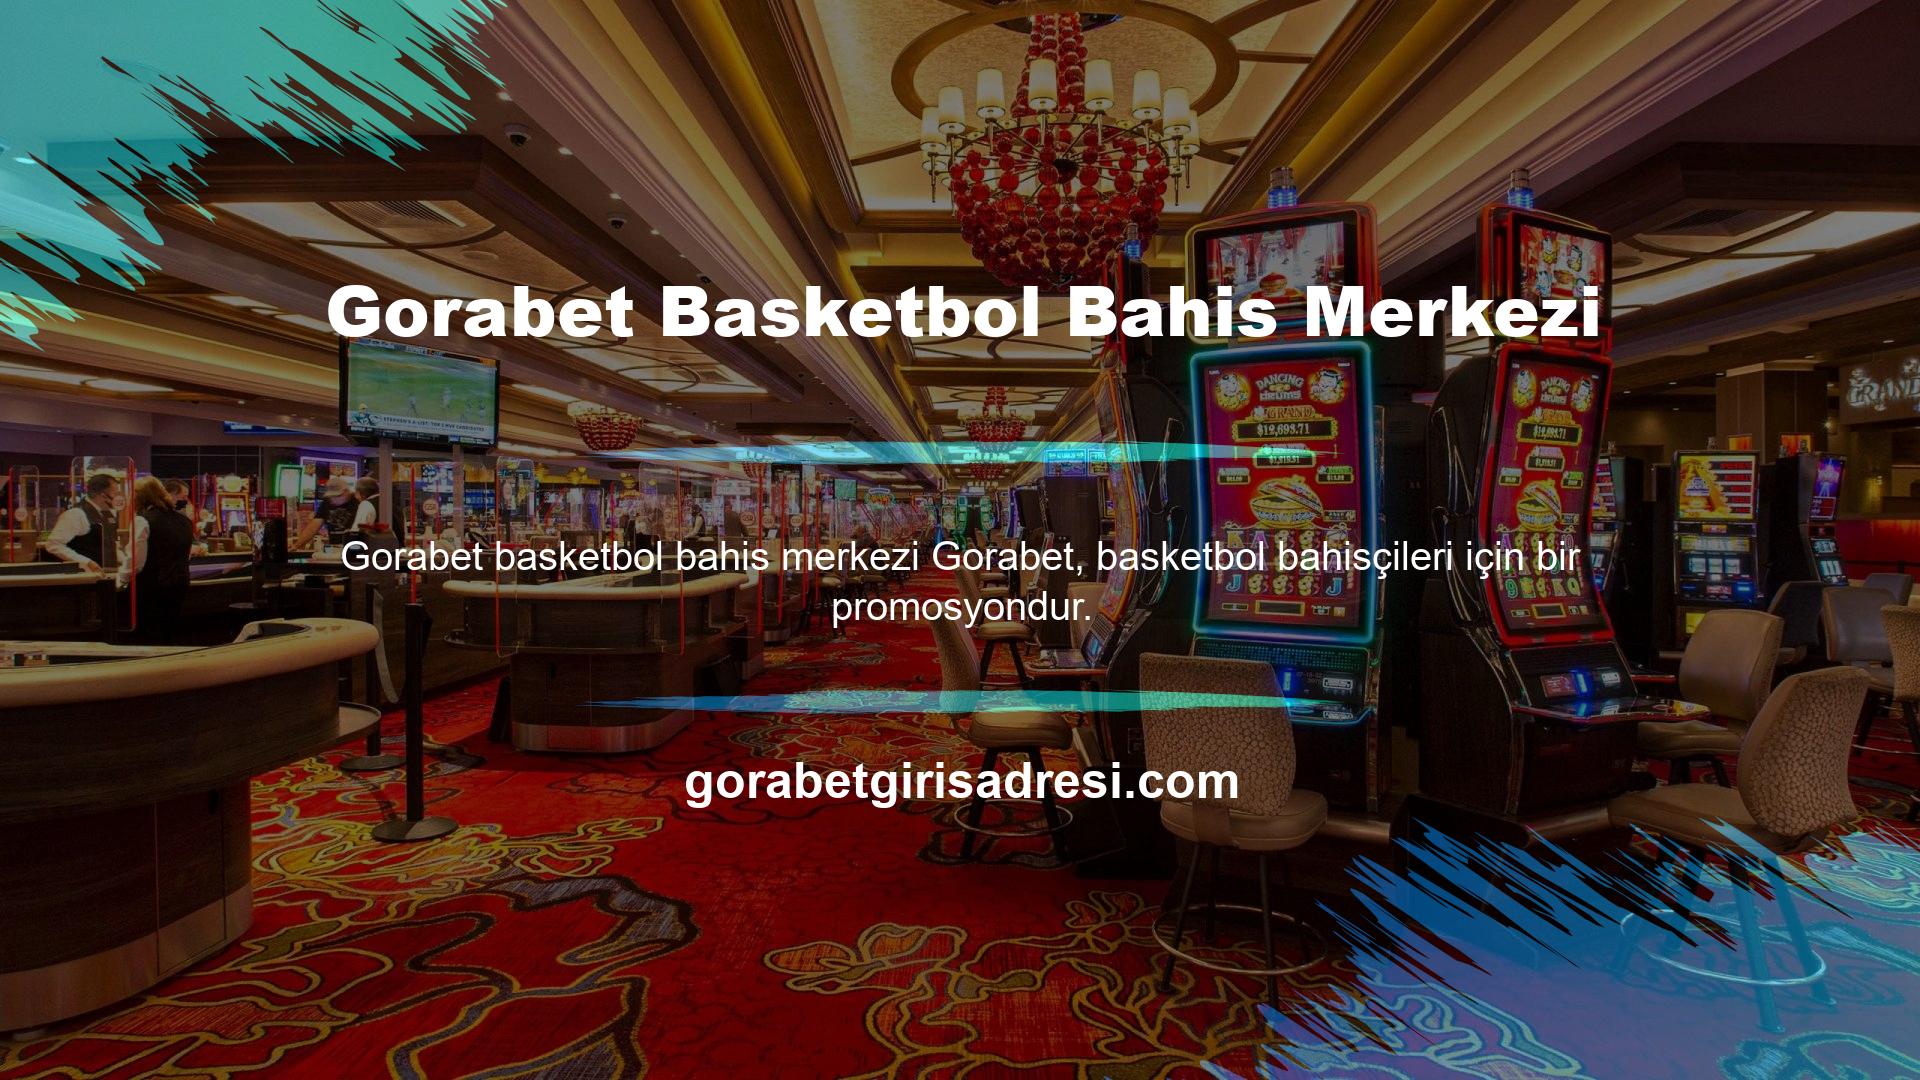 Türkiye Basketbol Ligi'nin yanı sıra diğer basketbol liglerinden binlerce maça bahis oynayabilirsiniz